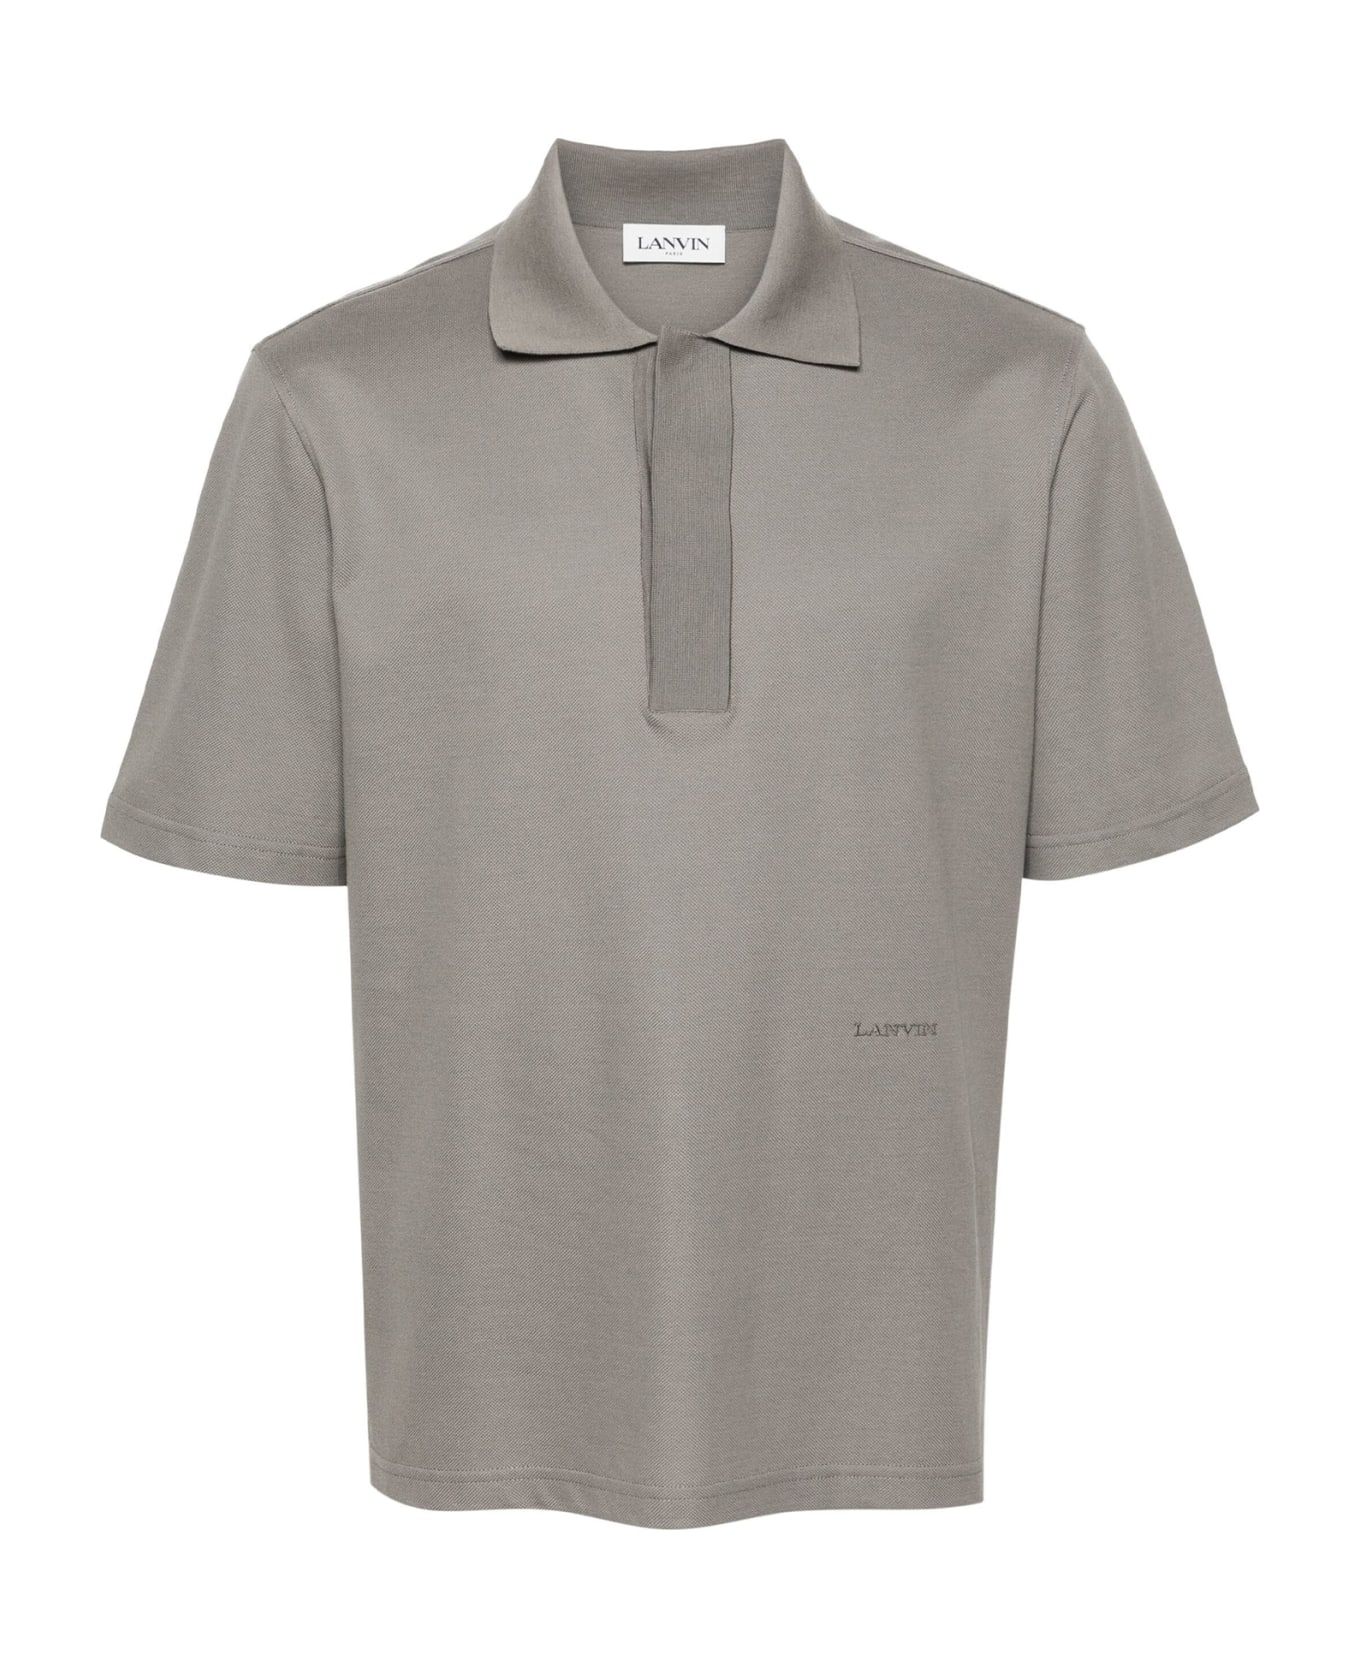 Lanvin Polo Shirt - CONCRETE ポロシャツ